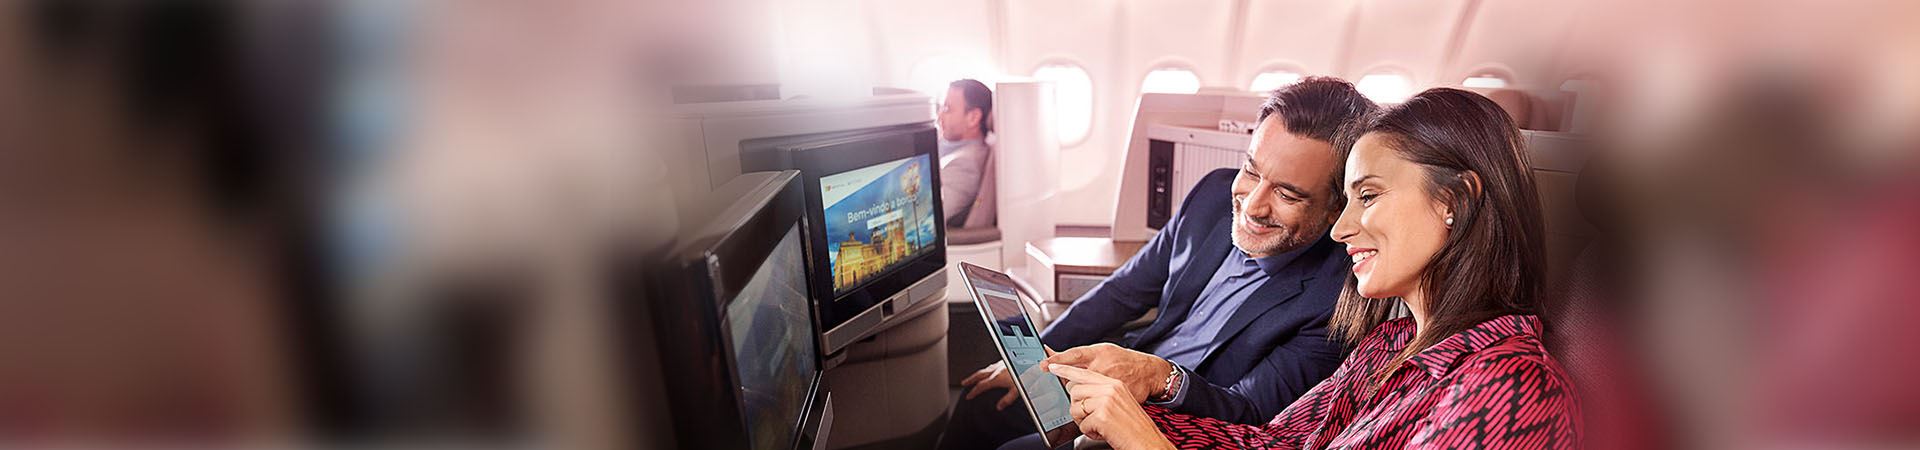 Close de uma mulher sorridente e um homem sorridente sentados em um avião. A mulher está segurando um tablet, e o homem está olhando para ele. Ambos estão apontando para a tela do tablet. Há duas telas na frente deles, embutidas nos assentos do avião.